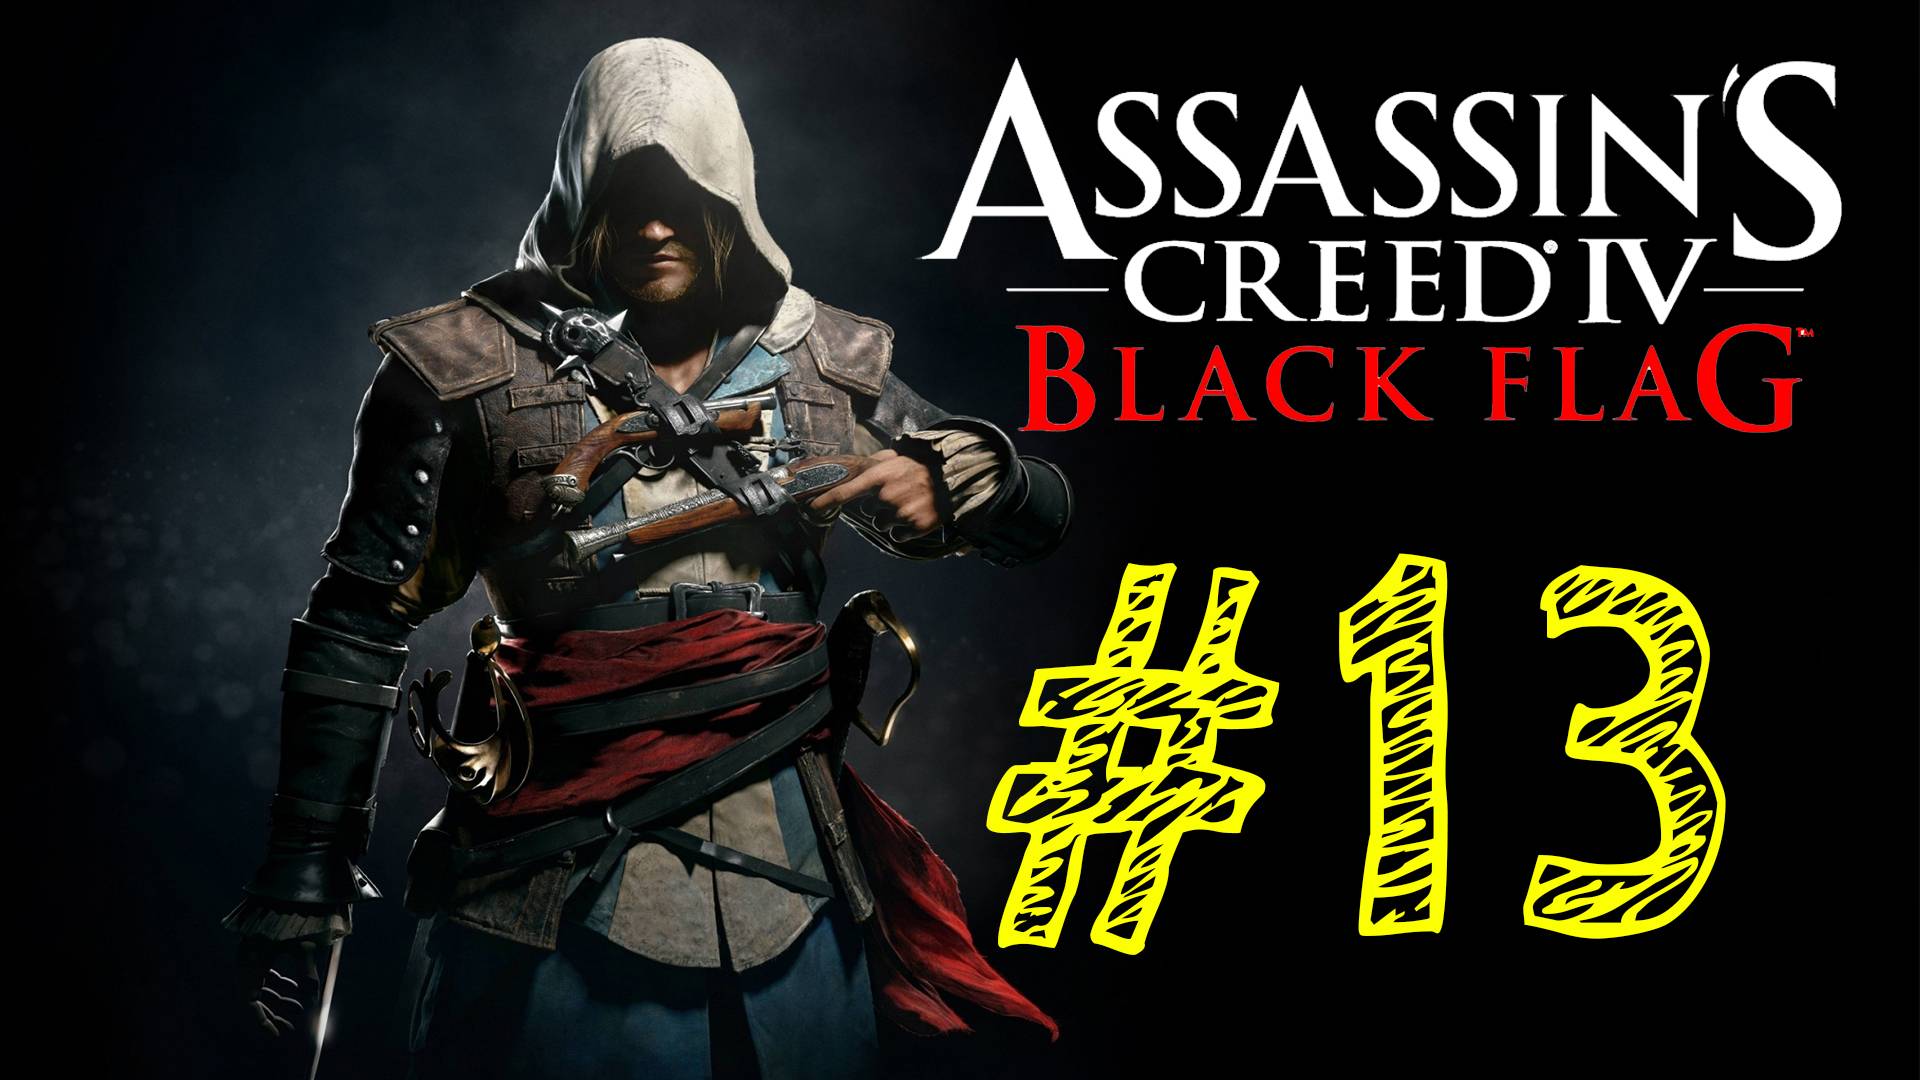 Assassins Creed IV Black Flag. Ассасин черный флаг. 13 выпуск. ВЕК ПИРАТСТВА. Прохождение компании